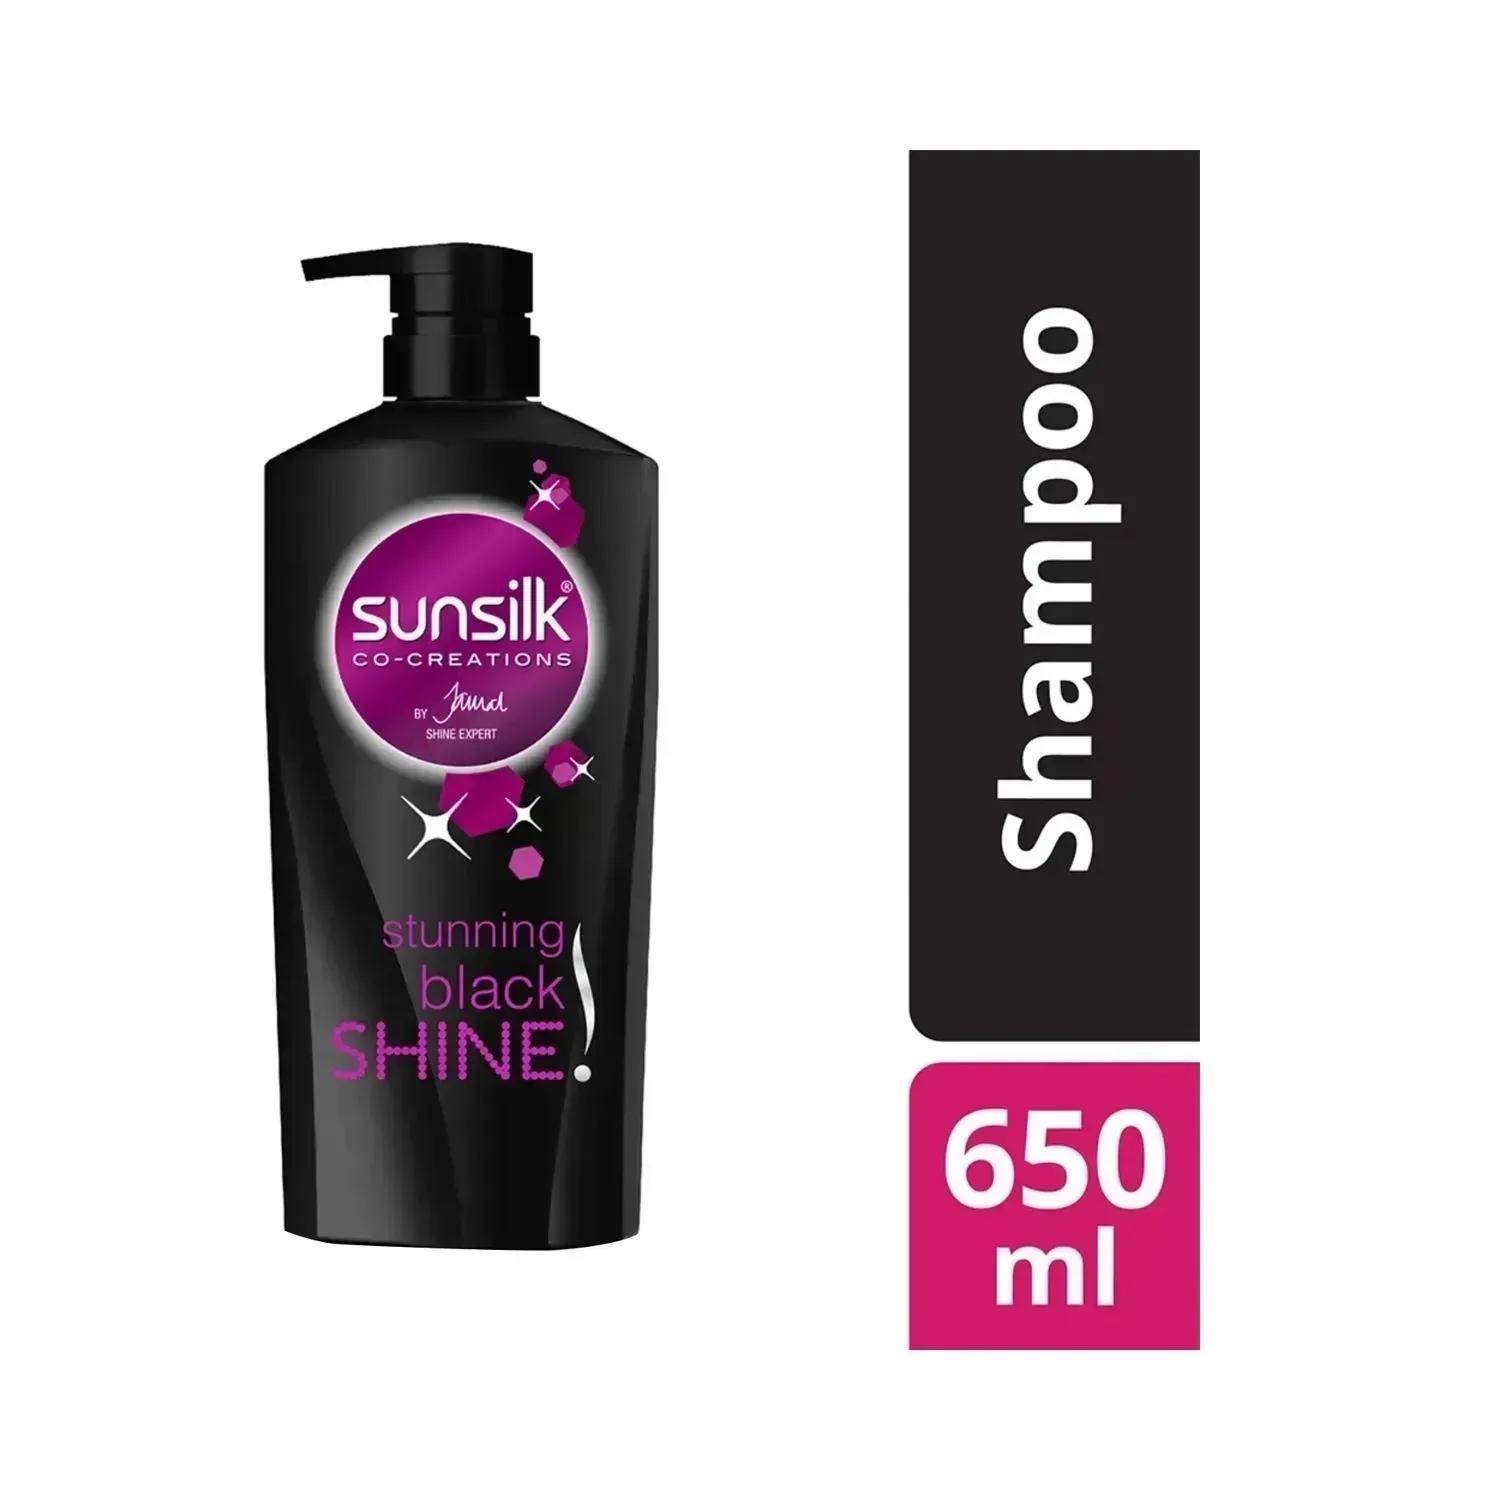 Sunsilk Stunning Black Shine Shampoo - (650ml)